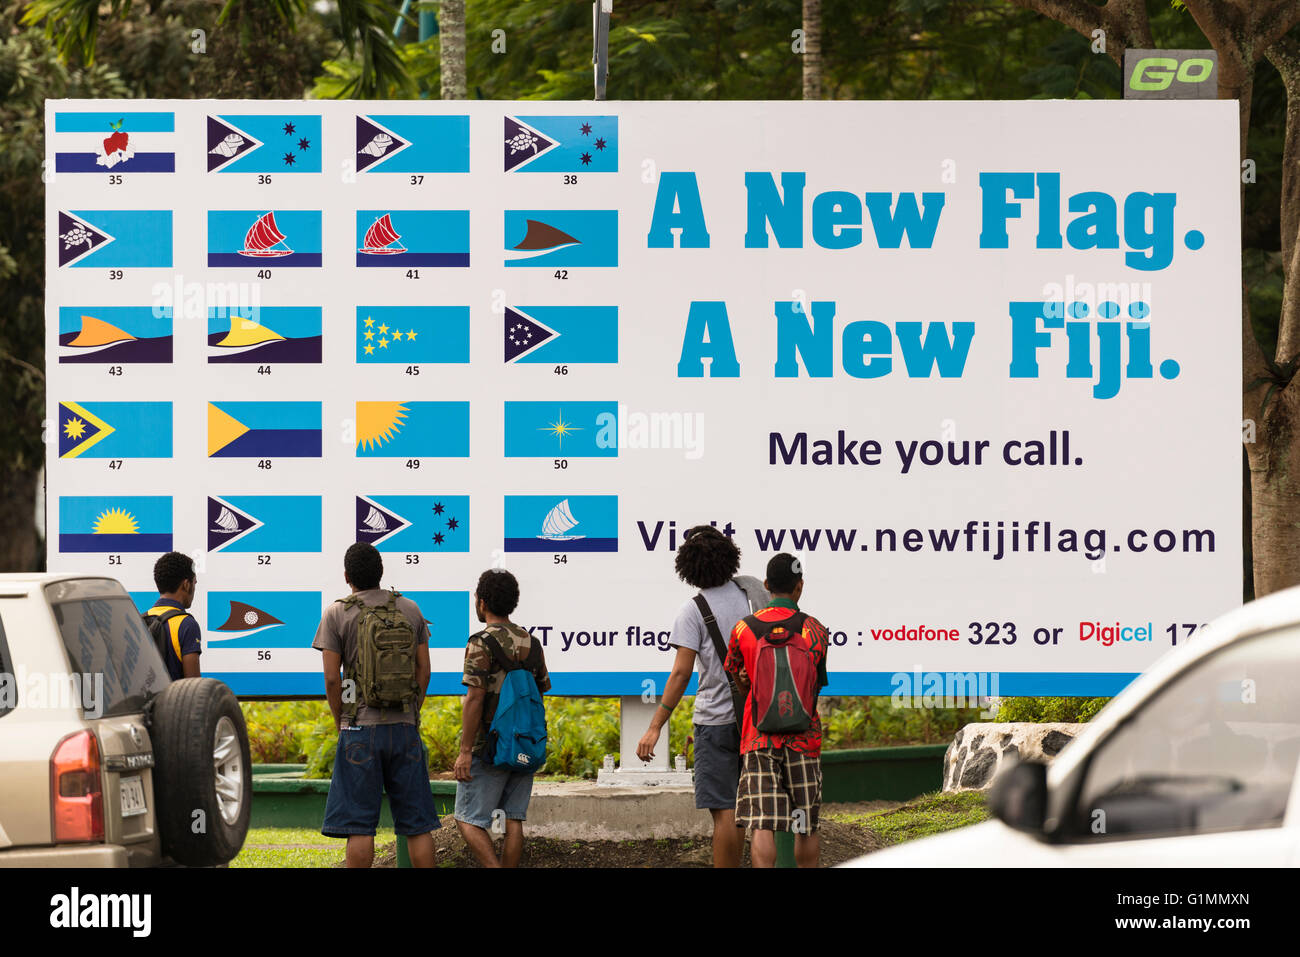 Les jeunes hommes, l'air dans un éventaire routier à Suva affiche montrant différents modèles pour un nouveau drapeau national pour les Fidji. Les plans basés sur une pirogue traditionnelle. Banque D'Images